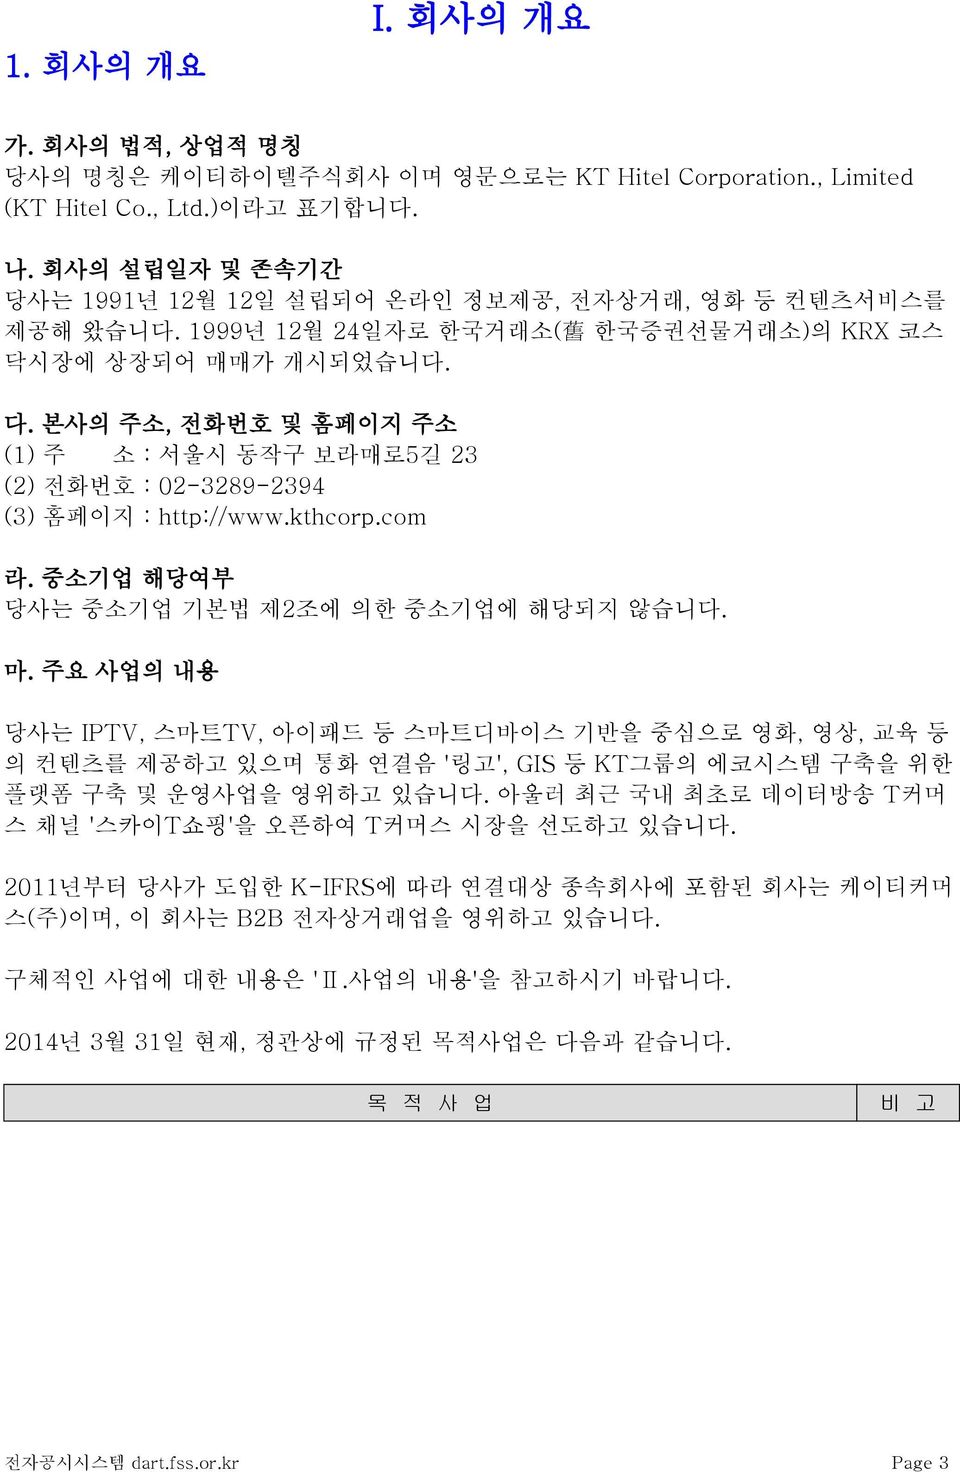 본사의 주소, 전화번호 및 홈페이지 주소 (1) 주 소 : 서울시 동작구 보라매로5길 23 (2) 전화번호 : 02-3289-2394 (3) 홈페이지 : http://www.kthcorp.com 라. 중소기업 해당여부 당사는 중소기업 기본법 제2조에 의한 중소기업에 해당되지 않습니다. 마.